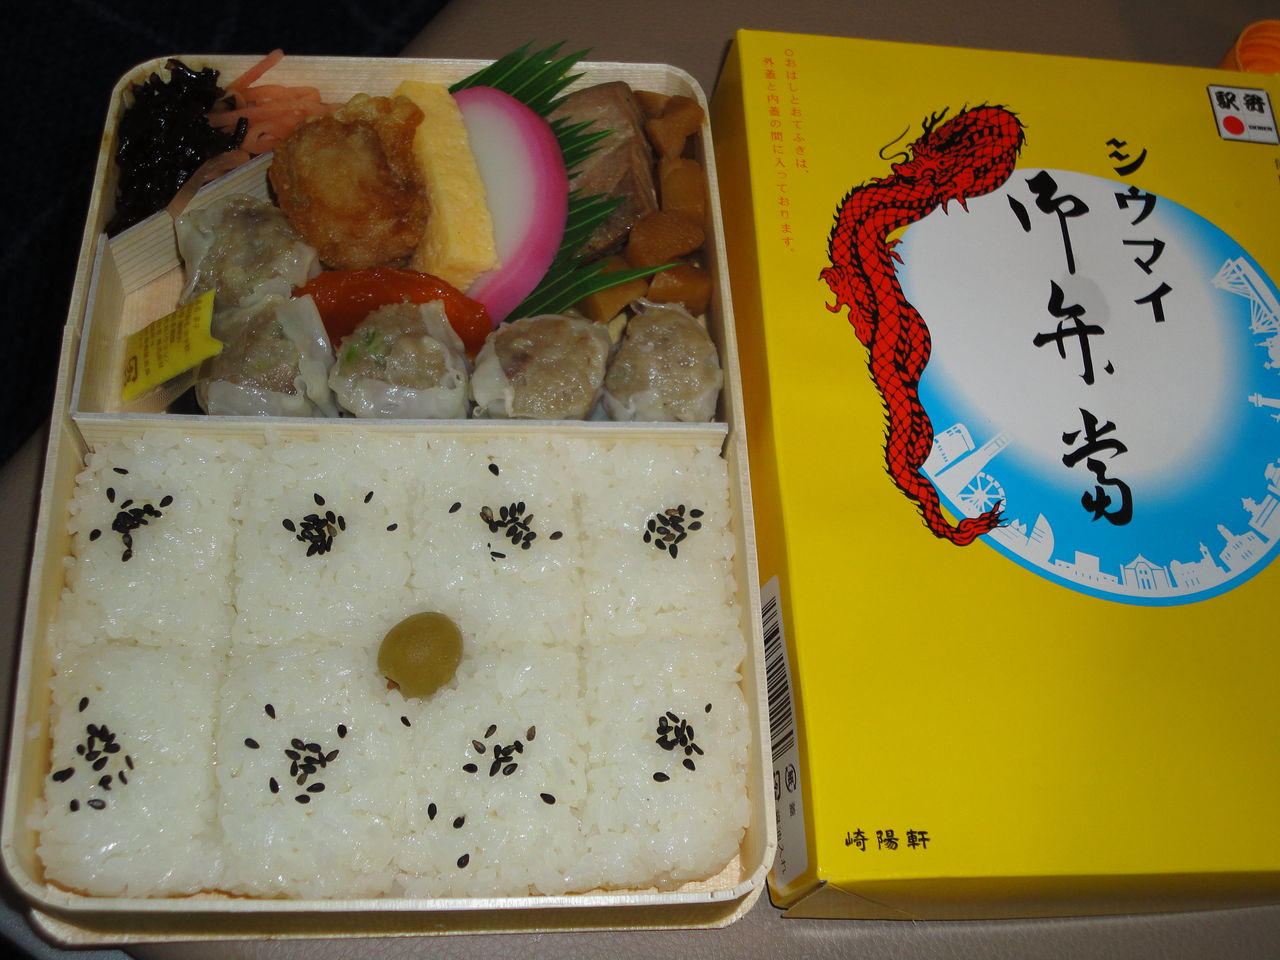 シウマイ弁当 いつもうまい 崎陽軒 羽田空港第１ビル売店 耽溺 マサ青木の美食とクルマ